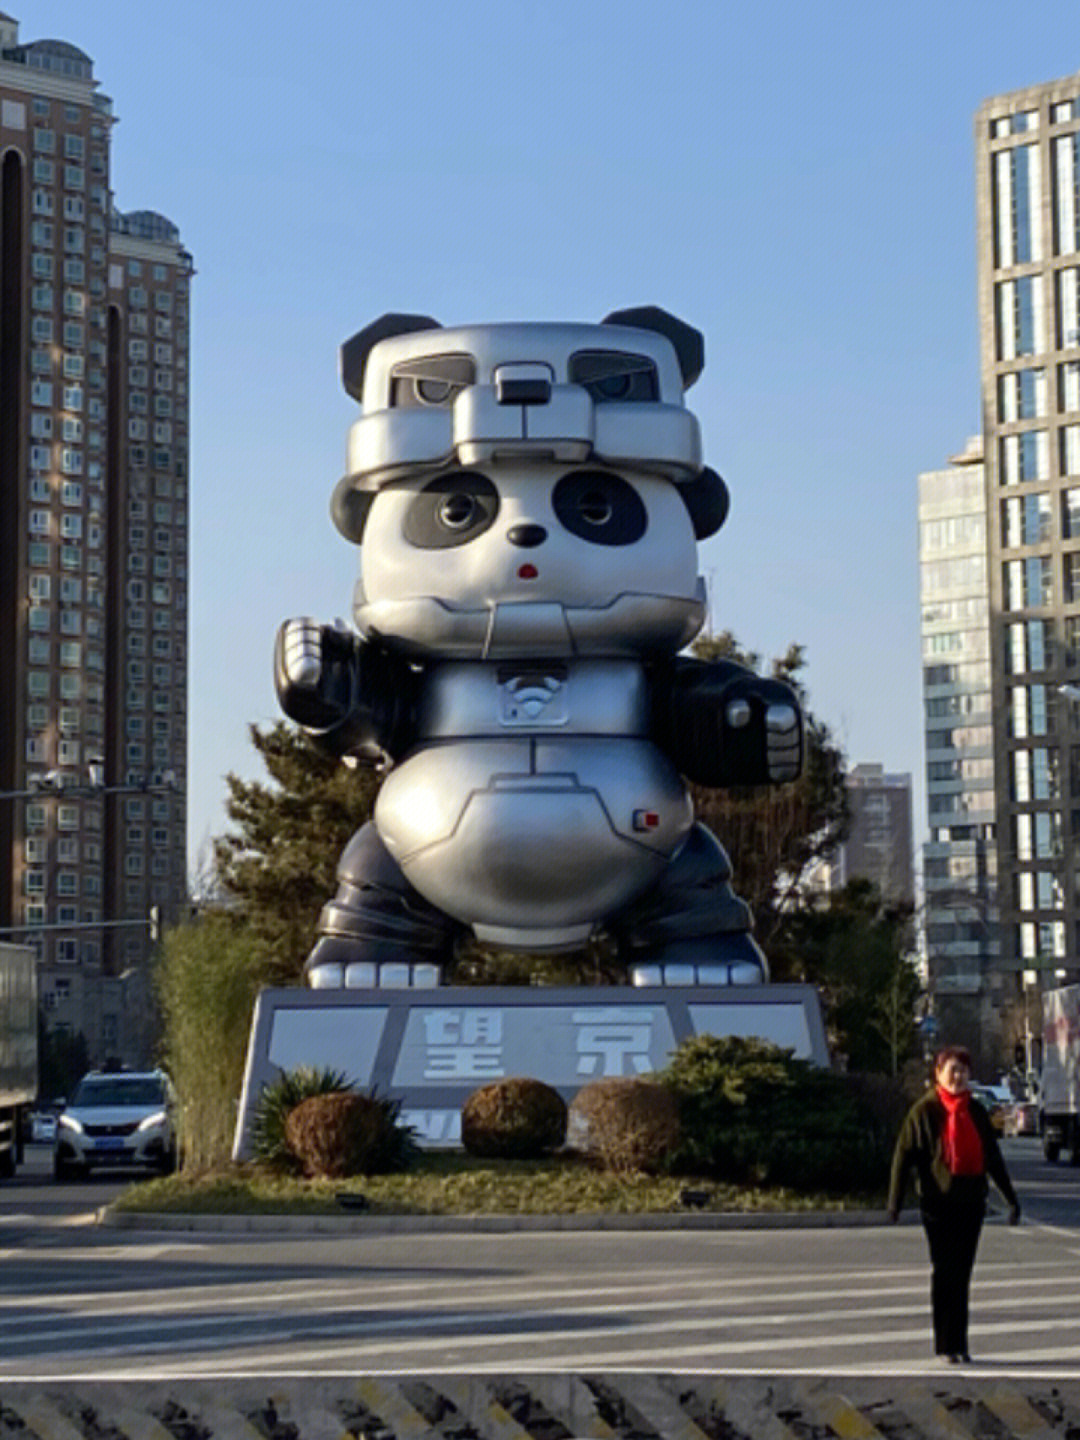 2022年1月1日上午,北京市朝阳区望京街道的新版熊猫雕塑正式亮相:目视